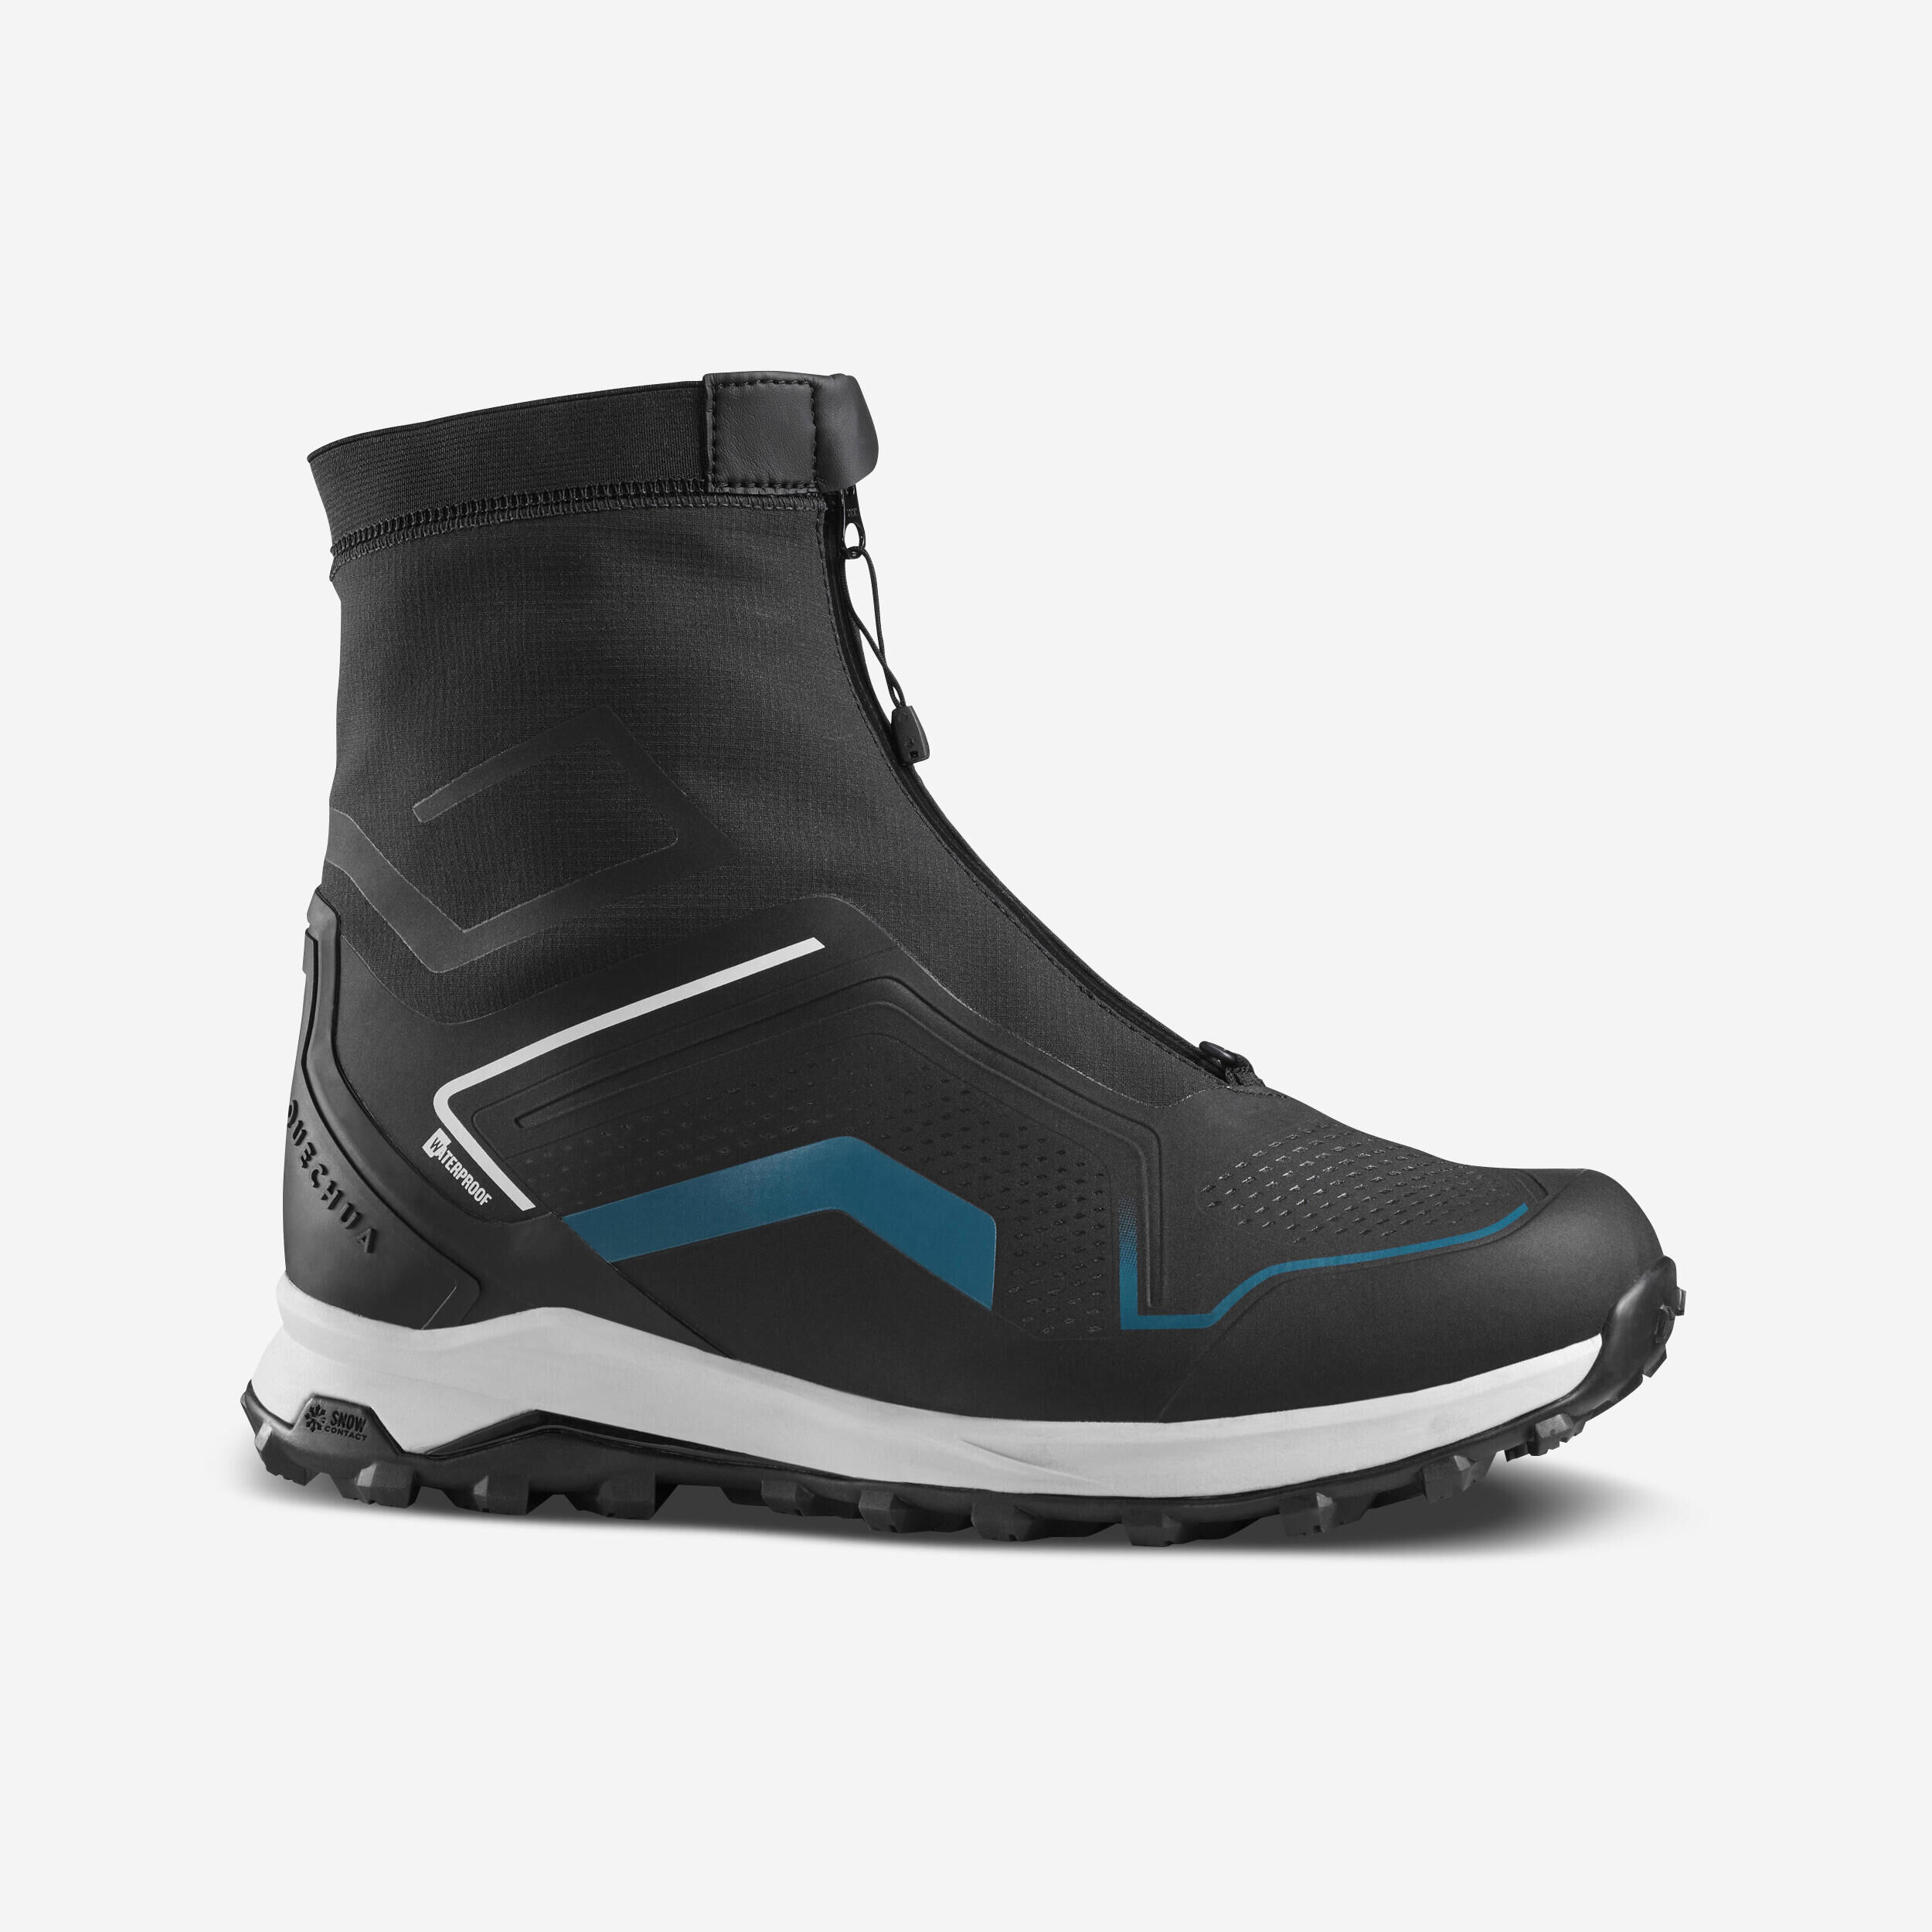 QUECHUA Men’s warm and waterproof hiking boots - SH900 PRO MOUNTAIN  